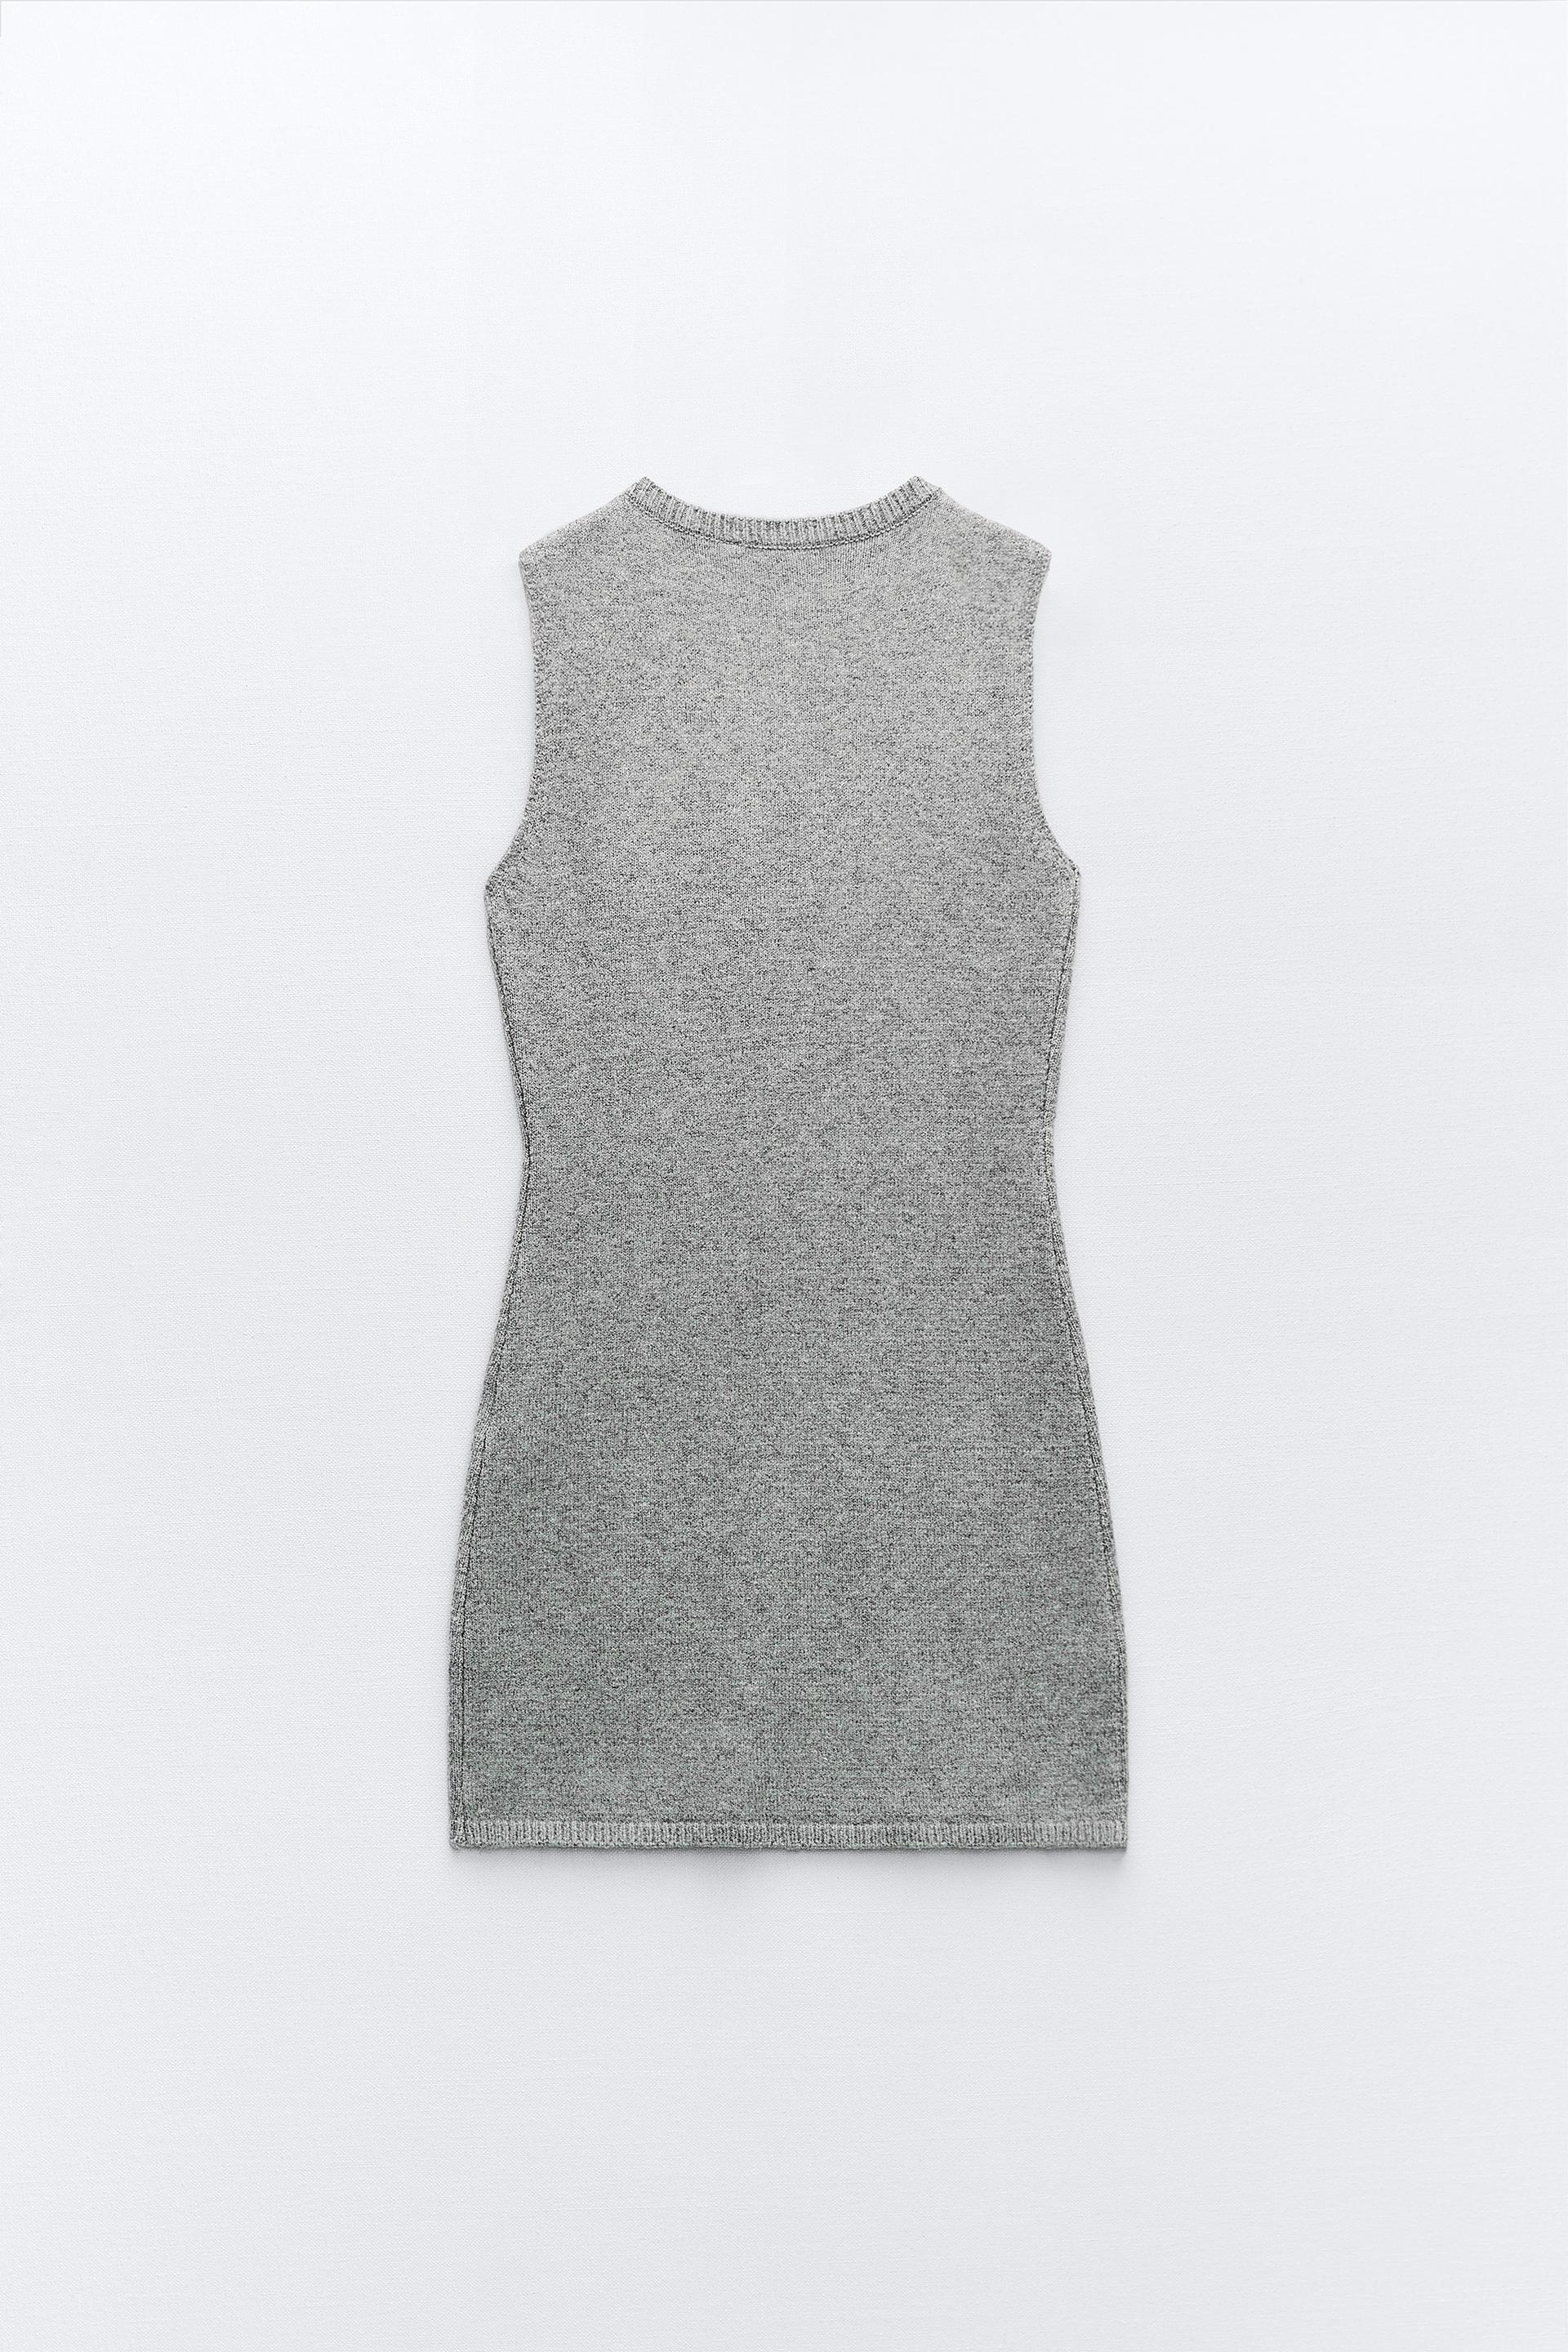 KNIT MINI DRESS - Mid-gray